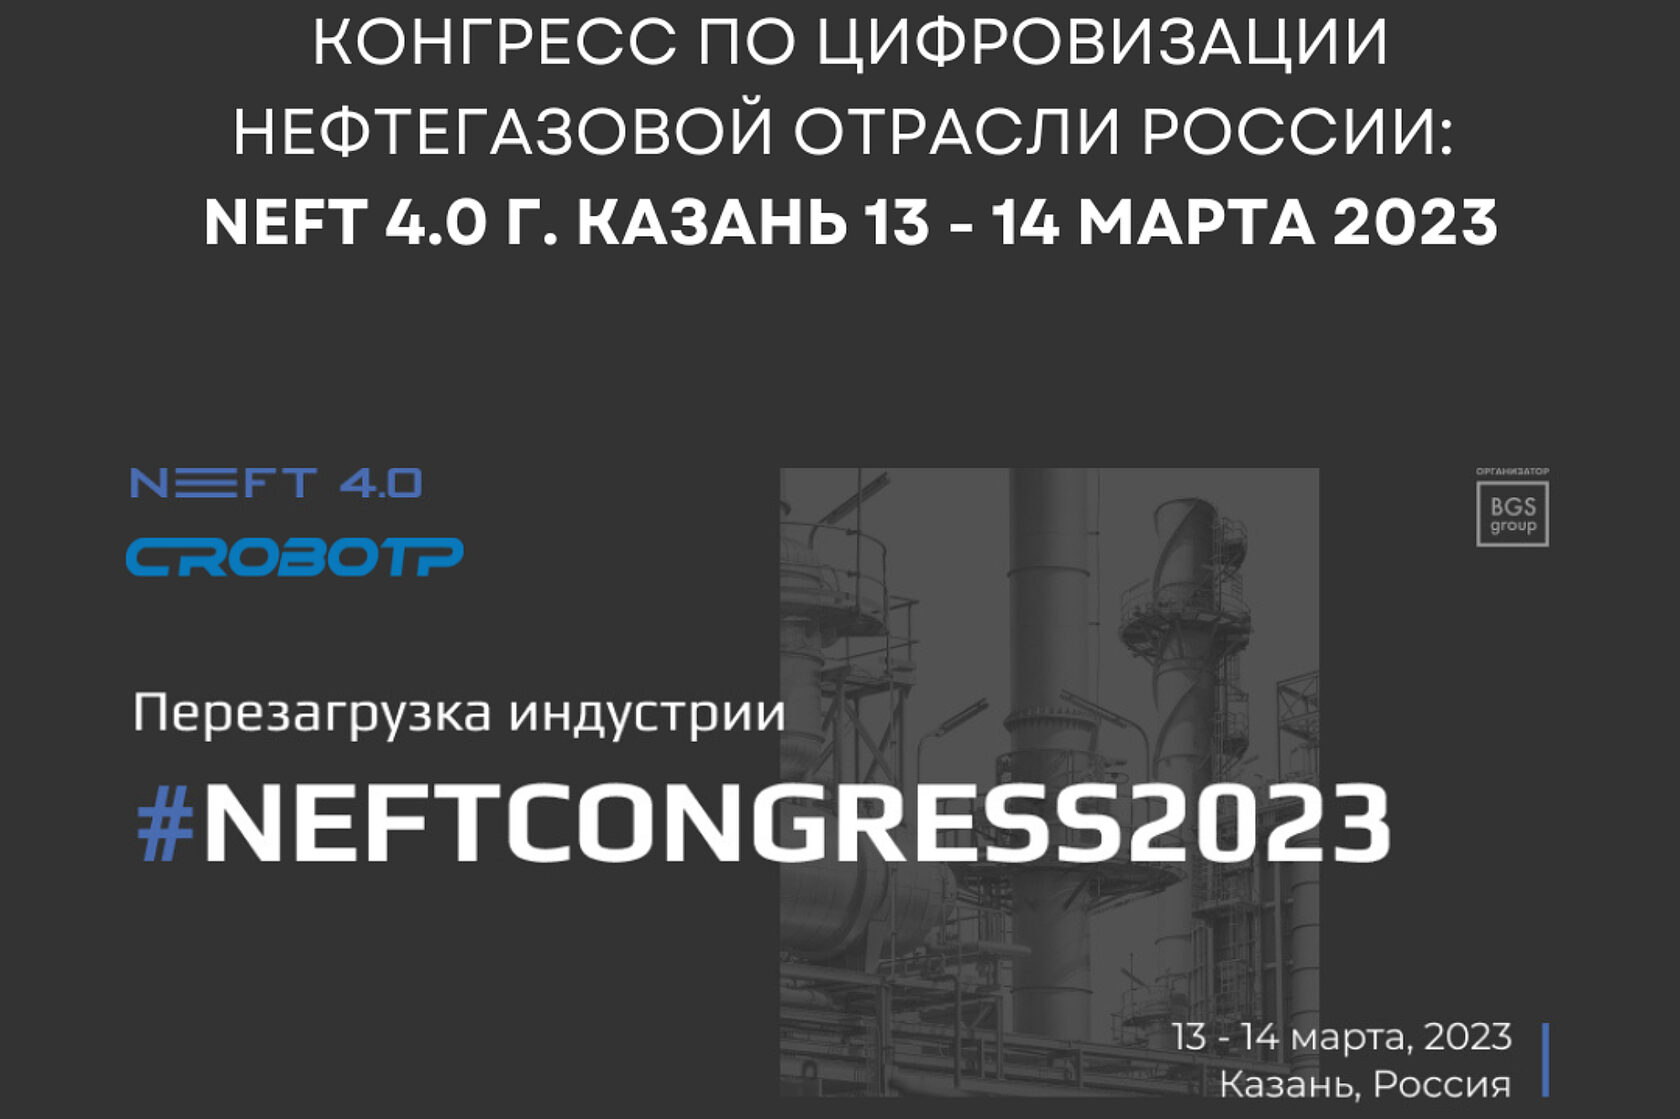 Компания CRP ROBOT приняла участие в Конгрессе по цифровизации нефтегазовой отрасли России: NEFT 4.0